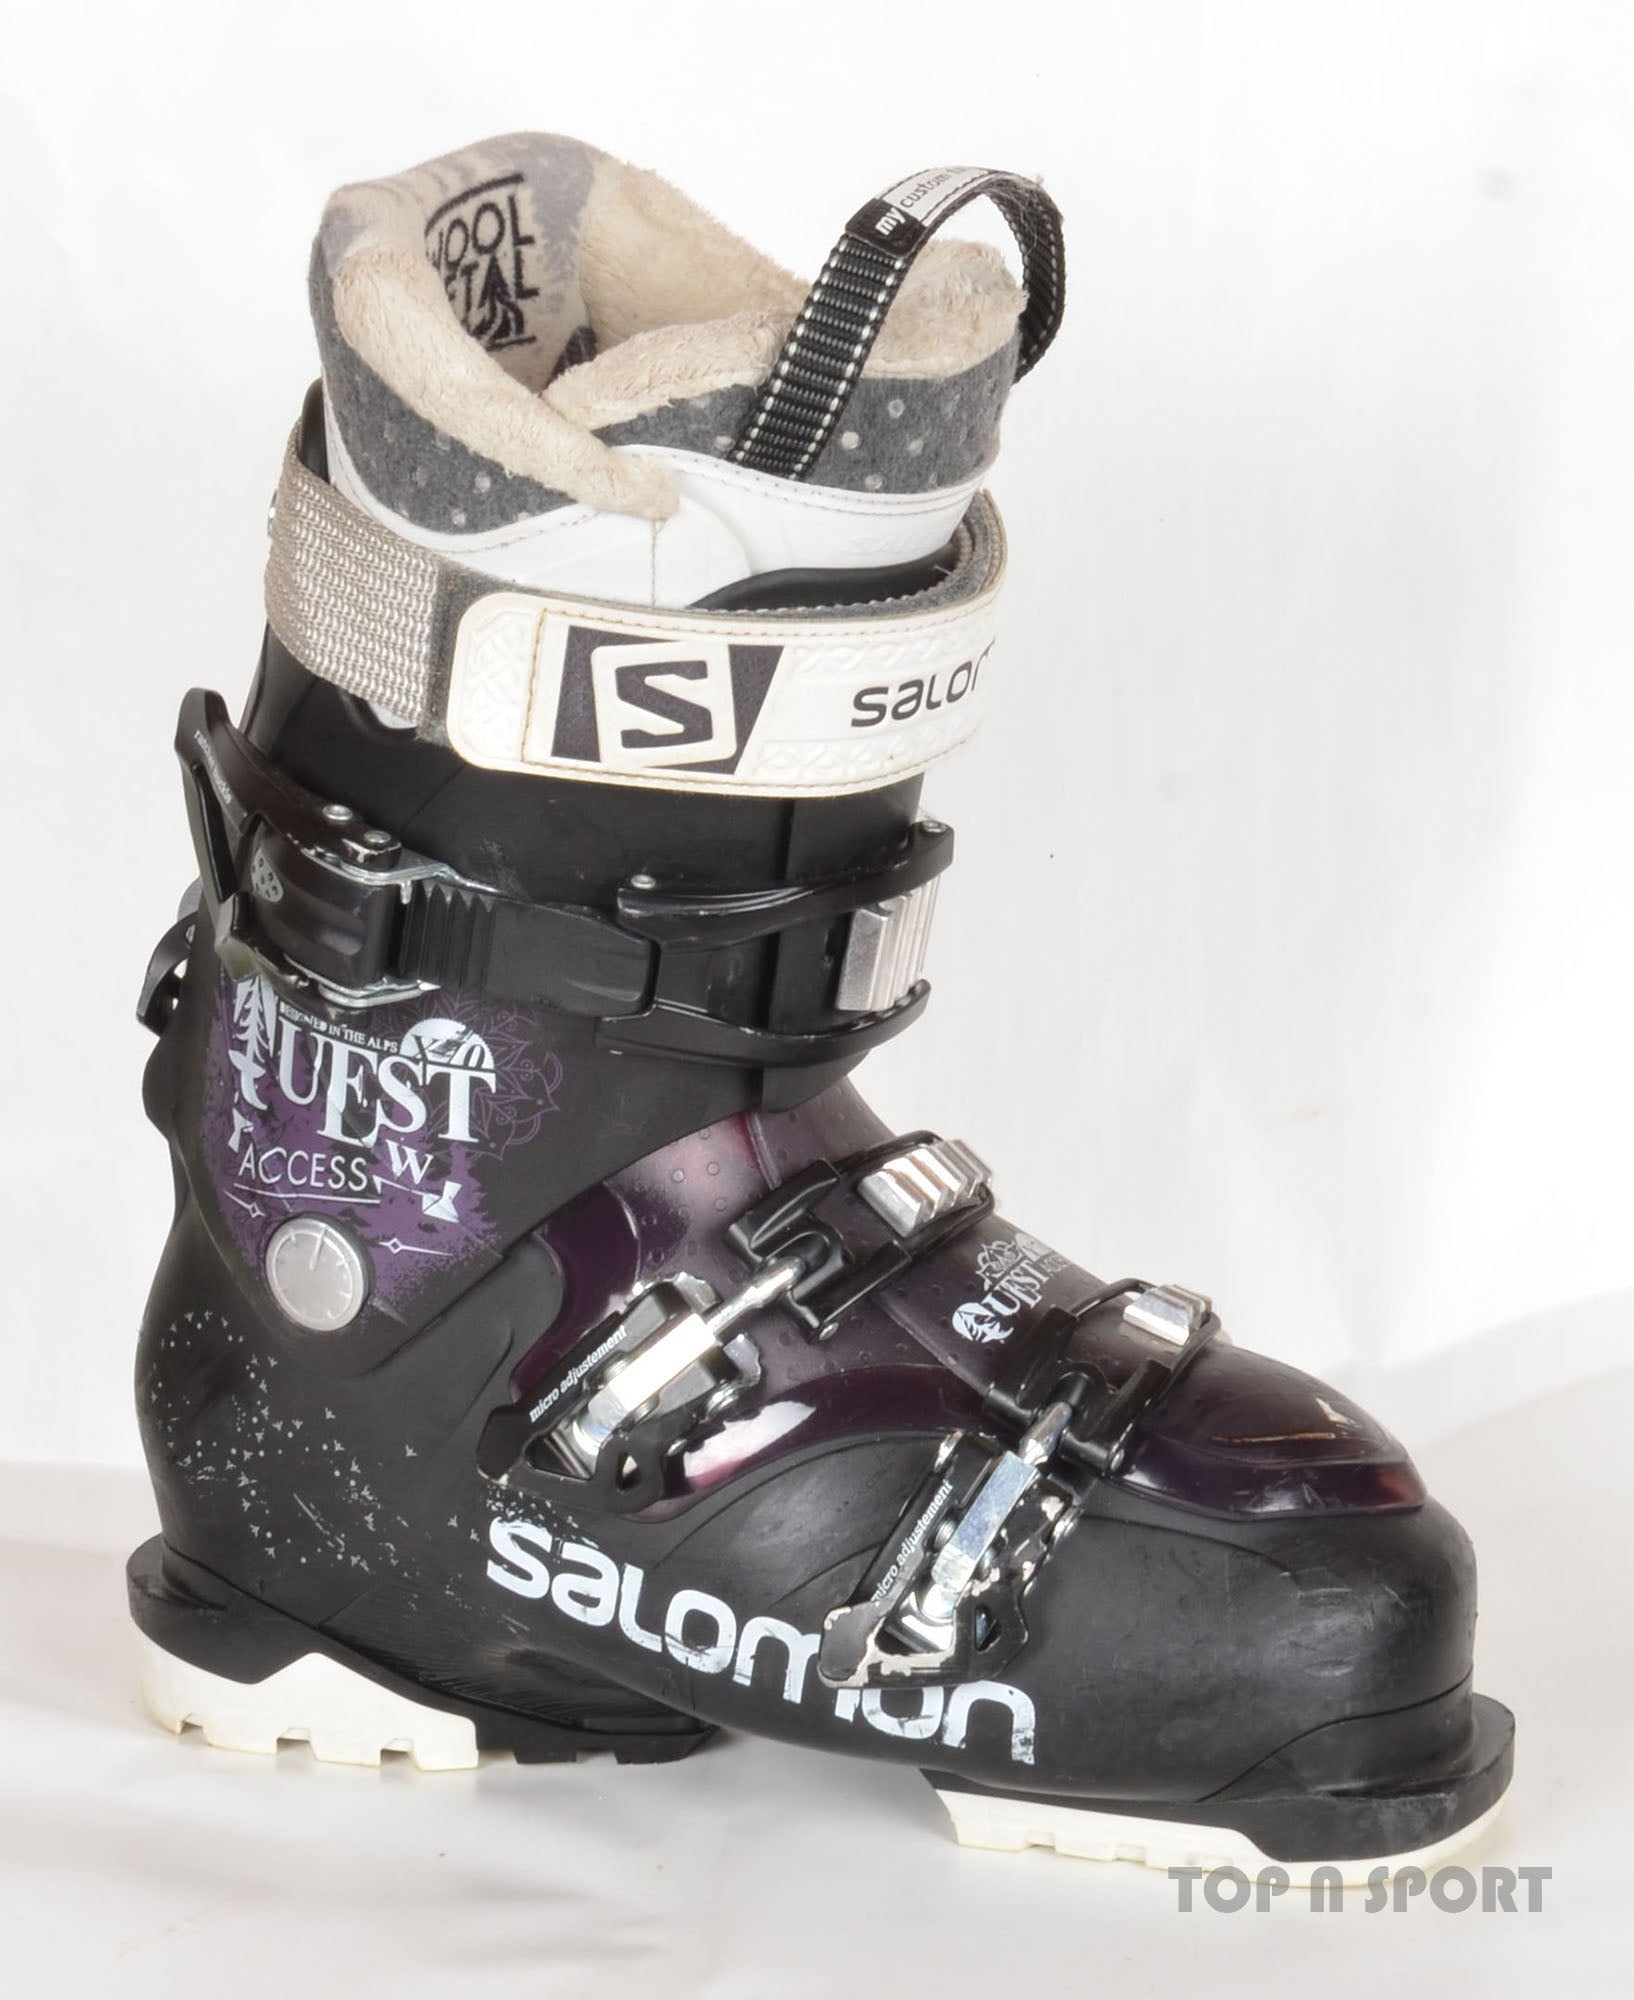 Continentaal Afdeling Verplicht Salomon QUEST ACCESS X 70 W - chaussures de ski d'occasion Femme -... – Top  N Sport, professionnel du matériel de ski d'occasion